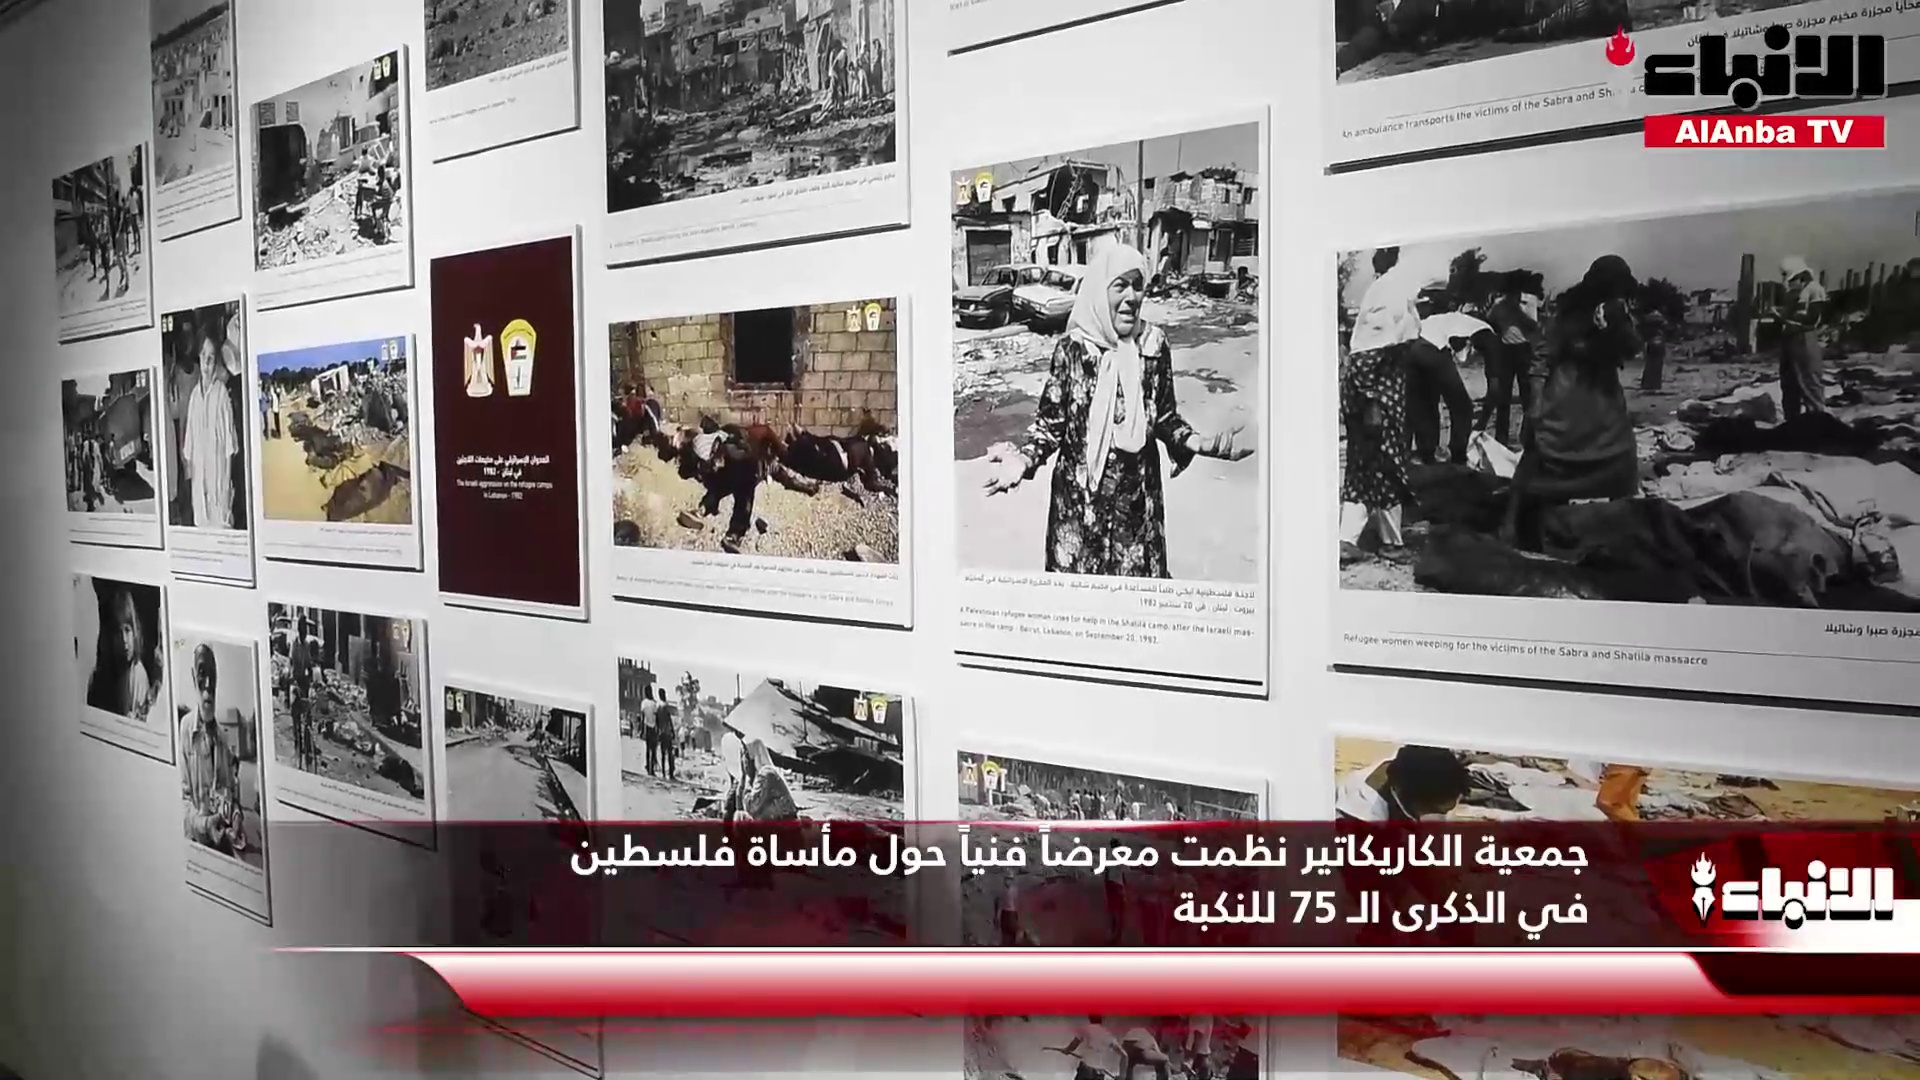 جمعية الكاريكاتير نظمت معرضاً فنياً حول مأساة فلسطين في الذكرى الـ 75 للنكبة